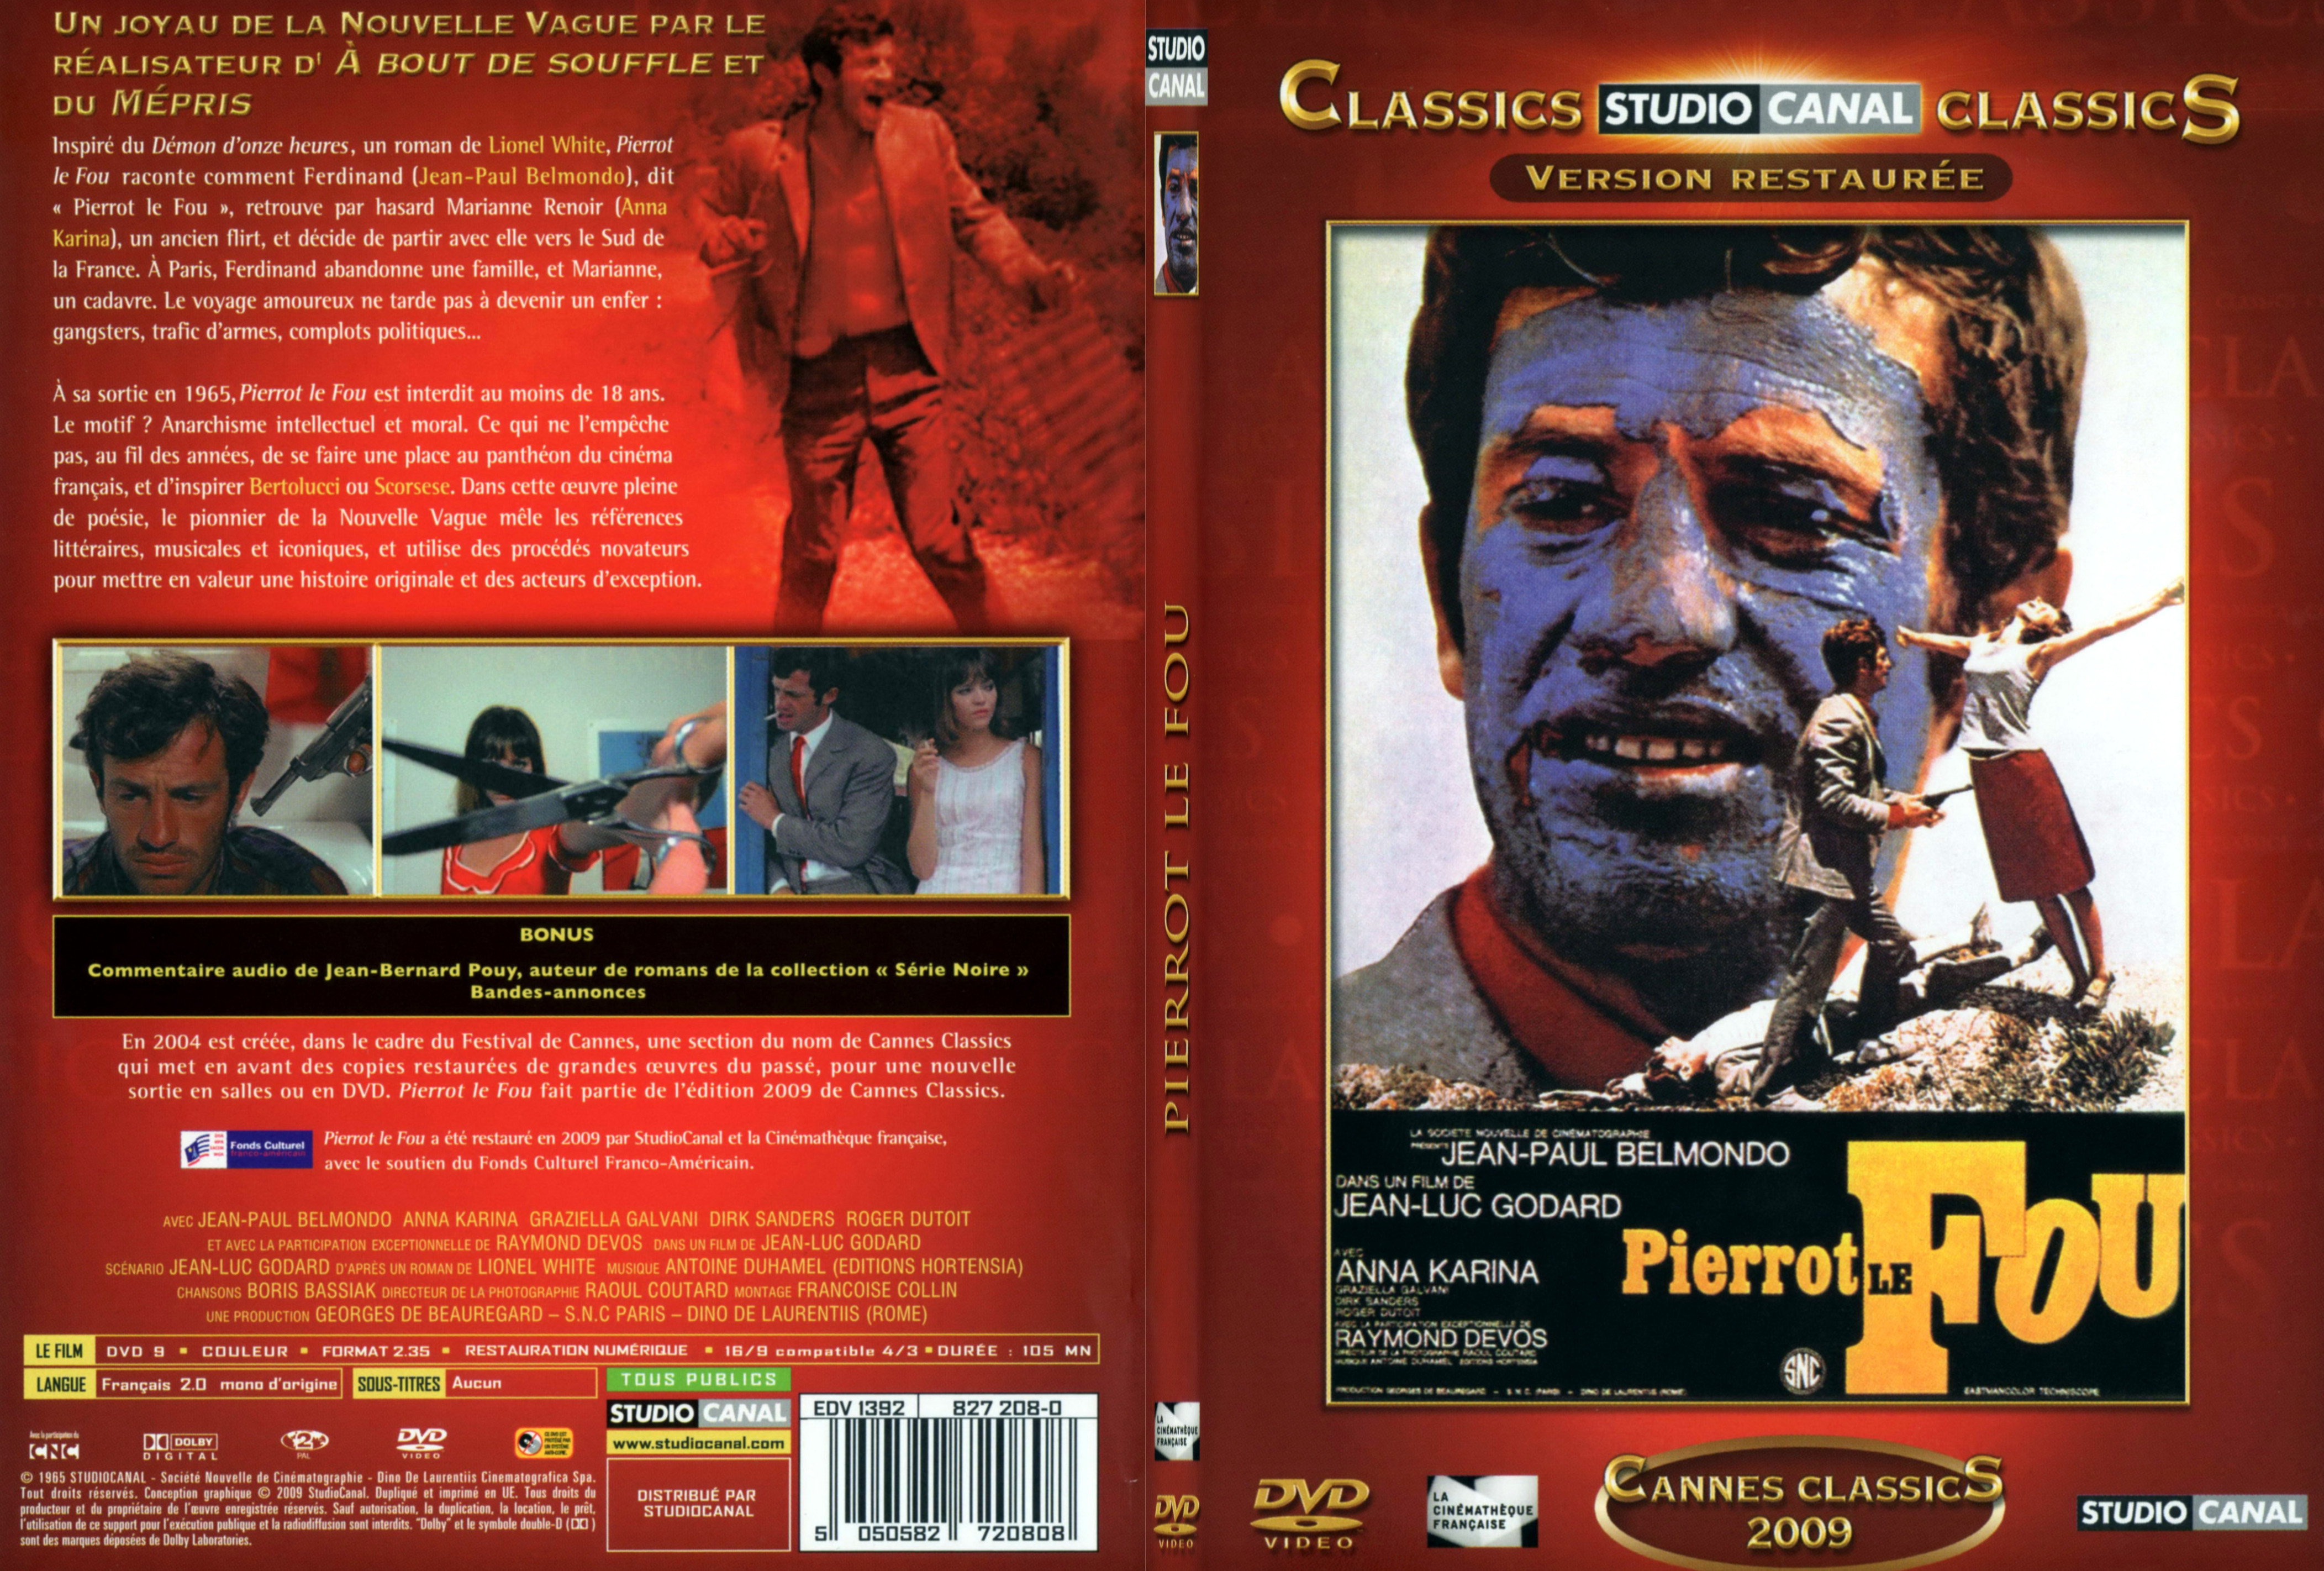 Jaquette DVD Pierrot le fou - SLIM v2